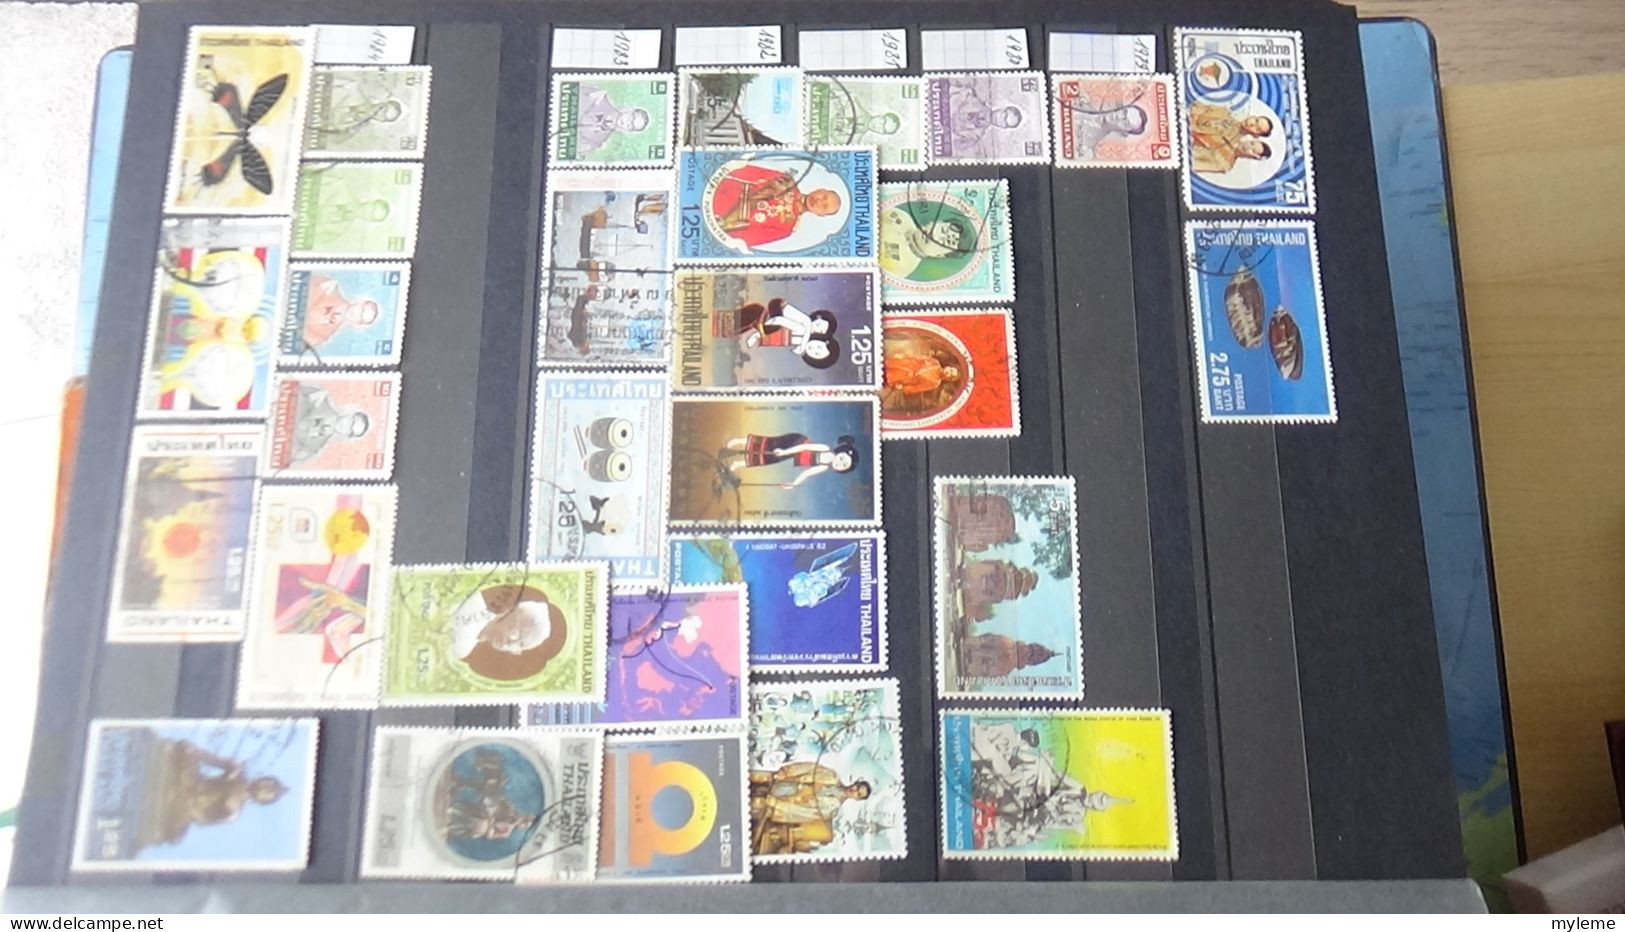 BG3 Ensemble de timbres de divers pays + France PA N° 16 à 37 ** Cote 891 euros. A saisir !!!